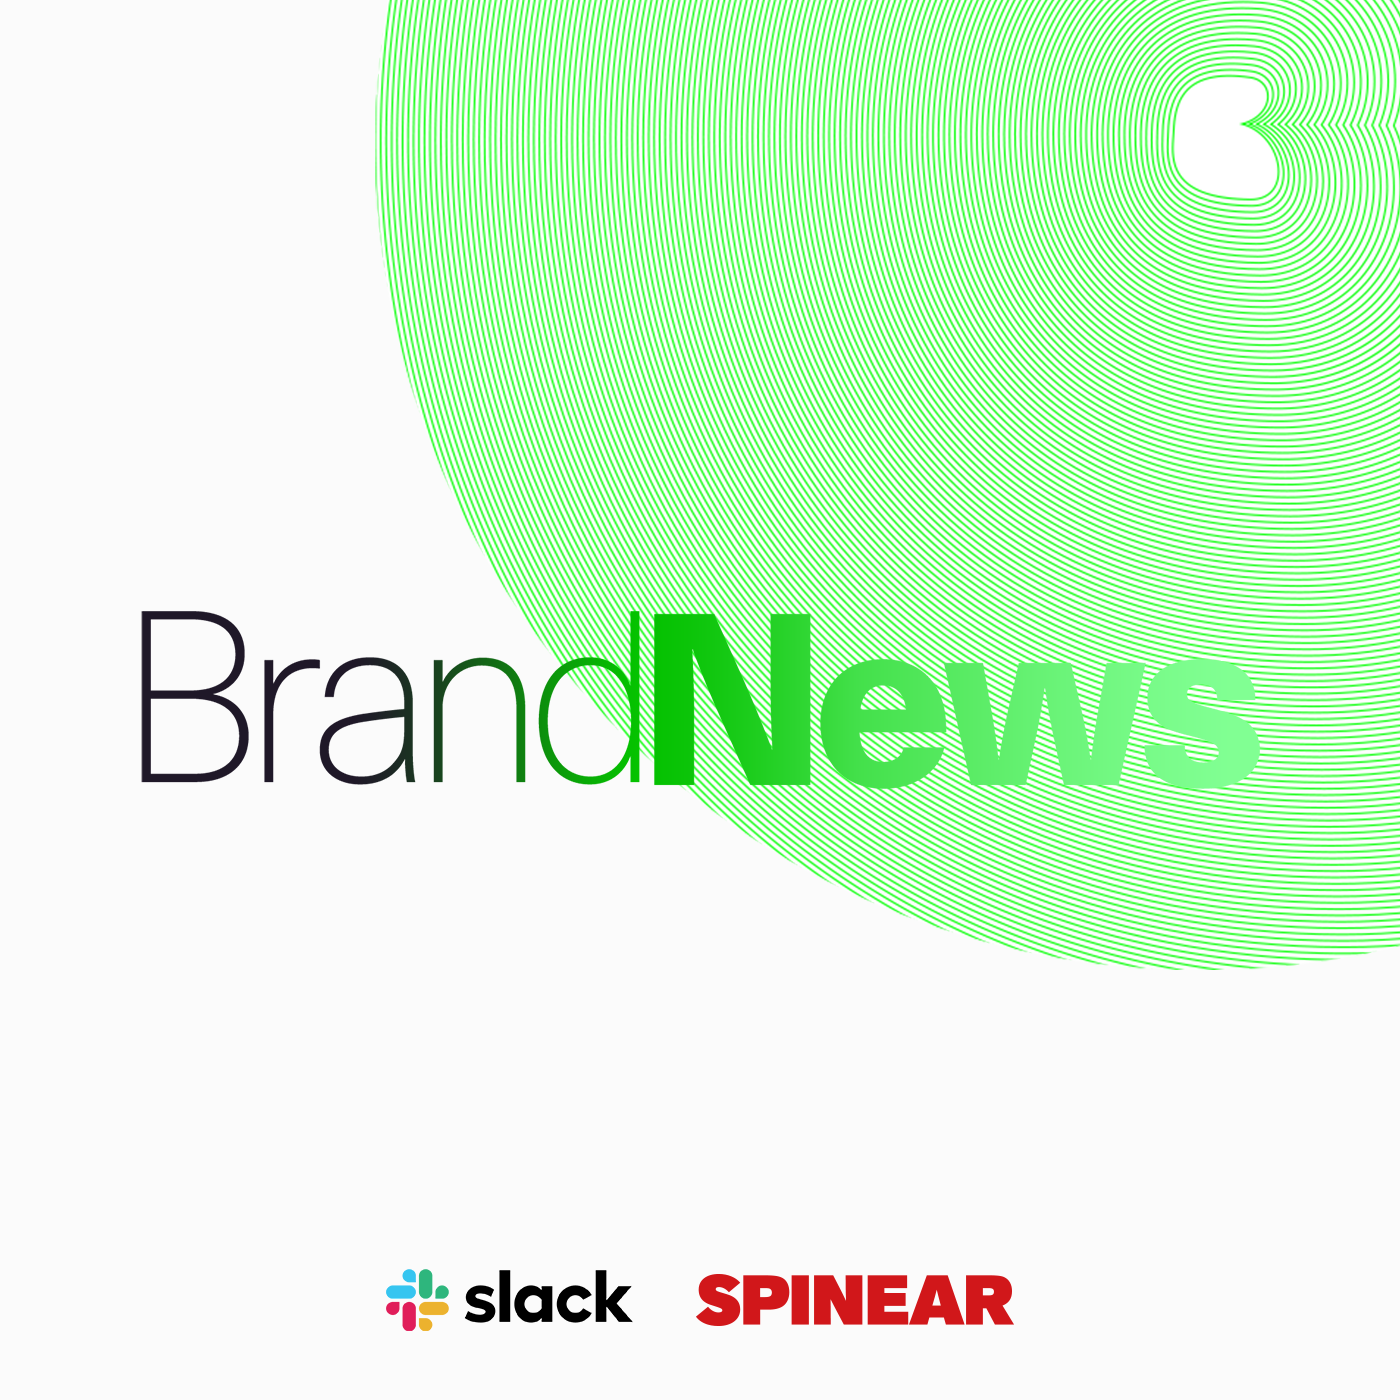 Slack 4 : パンデミックは、日本企業の働き方をどう変えたか - BrandNews with Slack